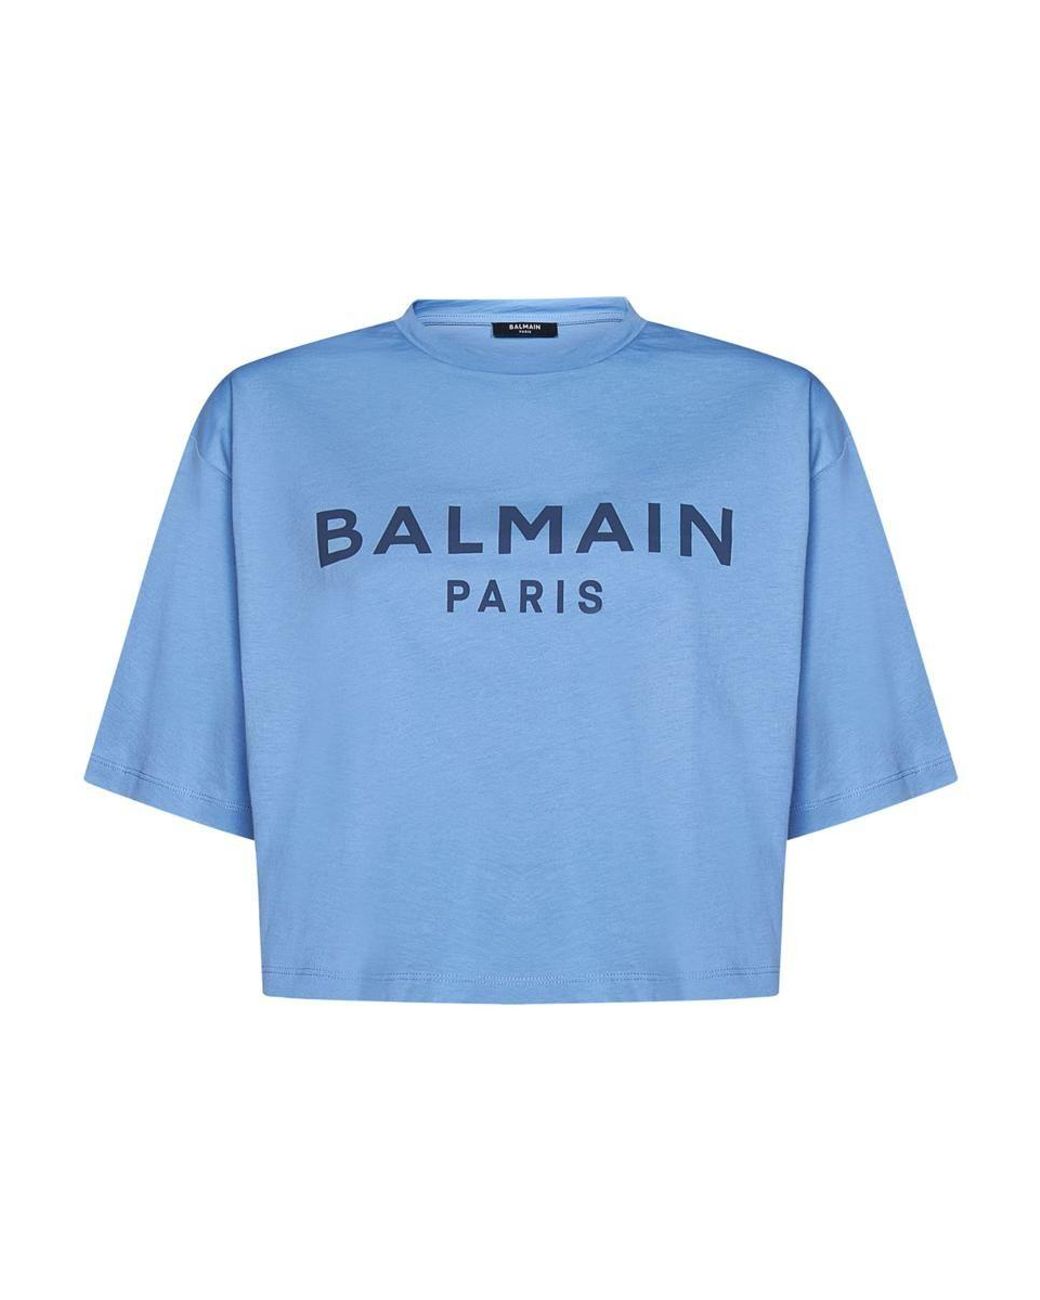 Balmain Paris T-shirt in Blue | Lyst